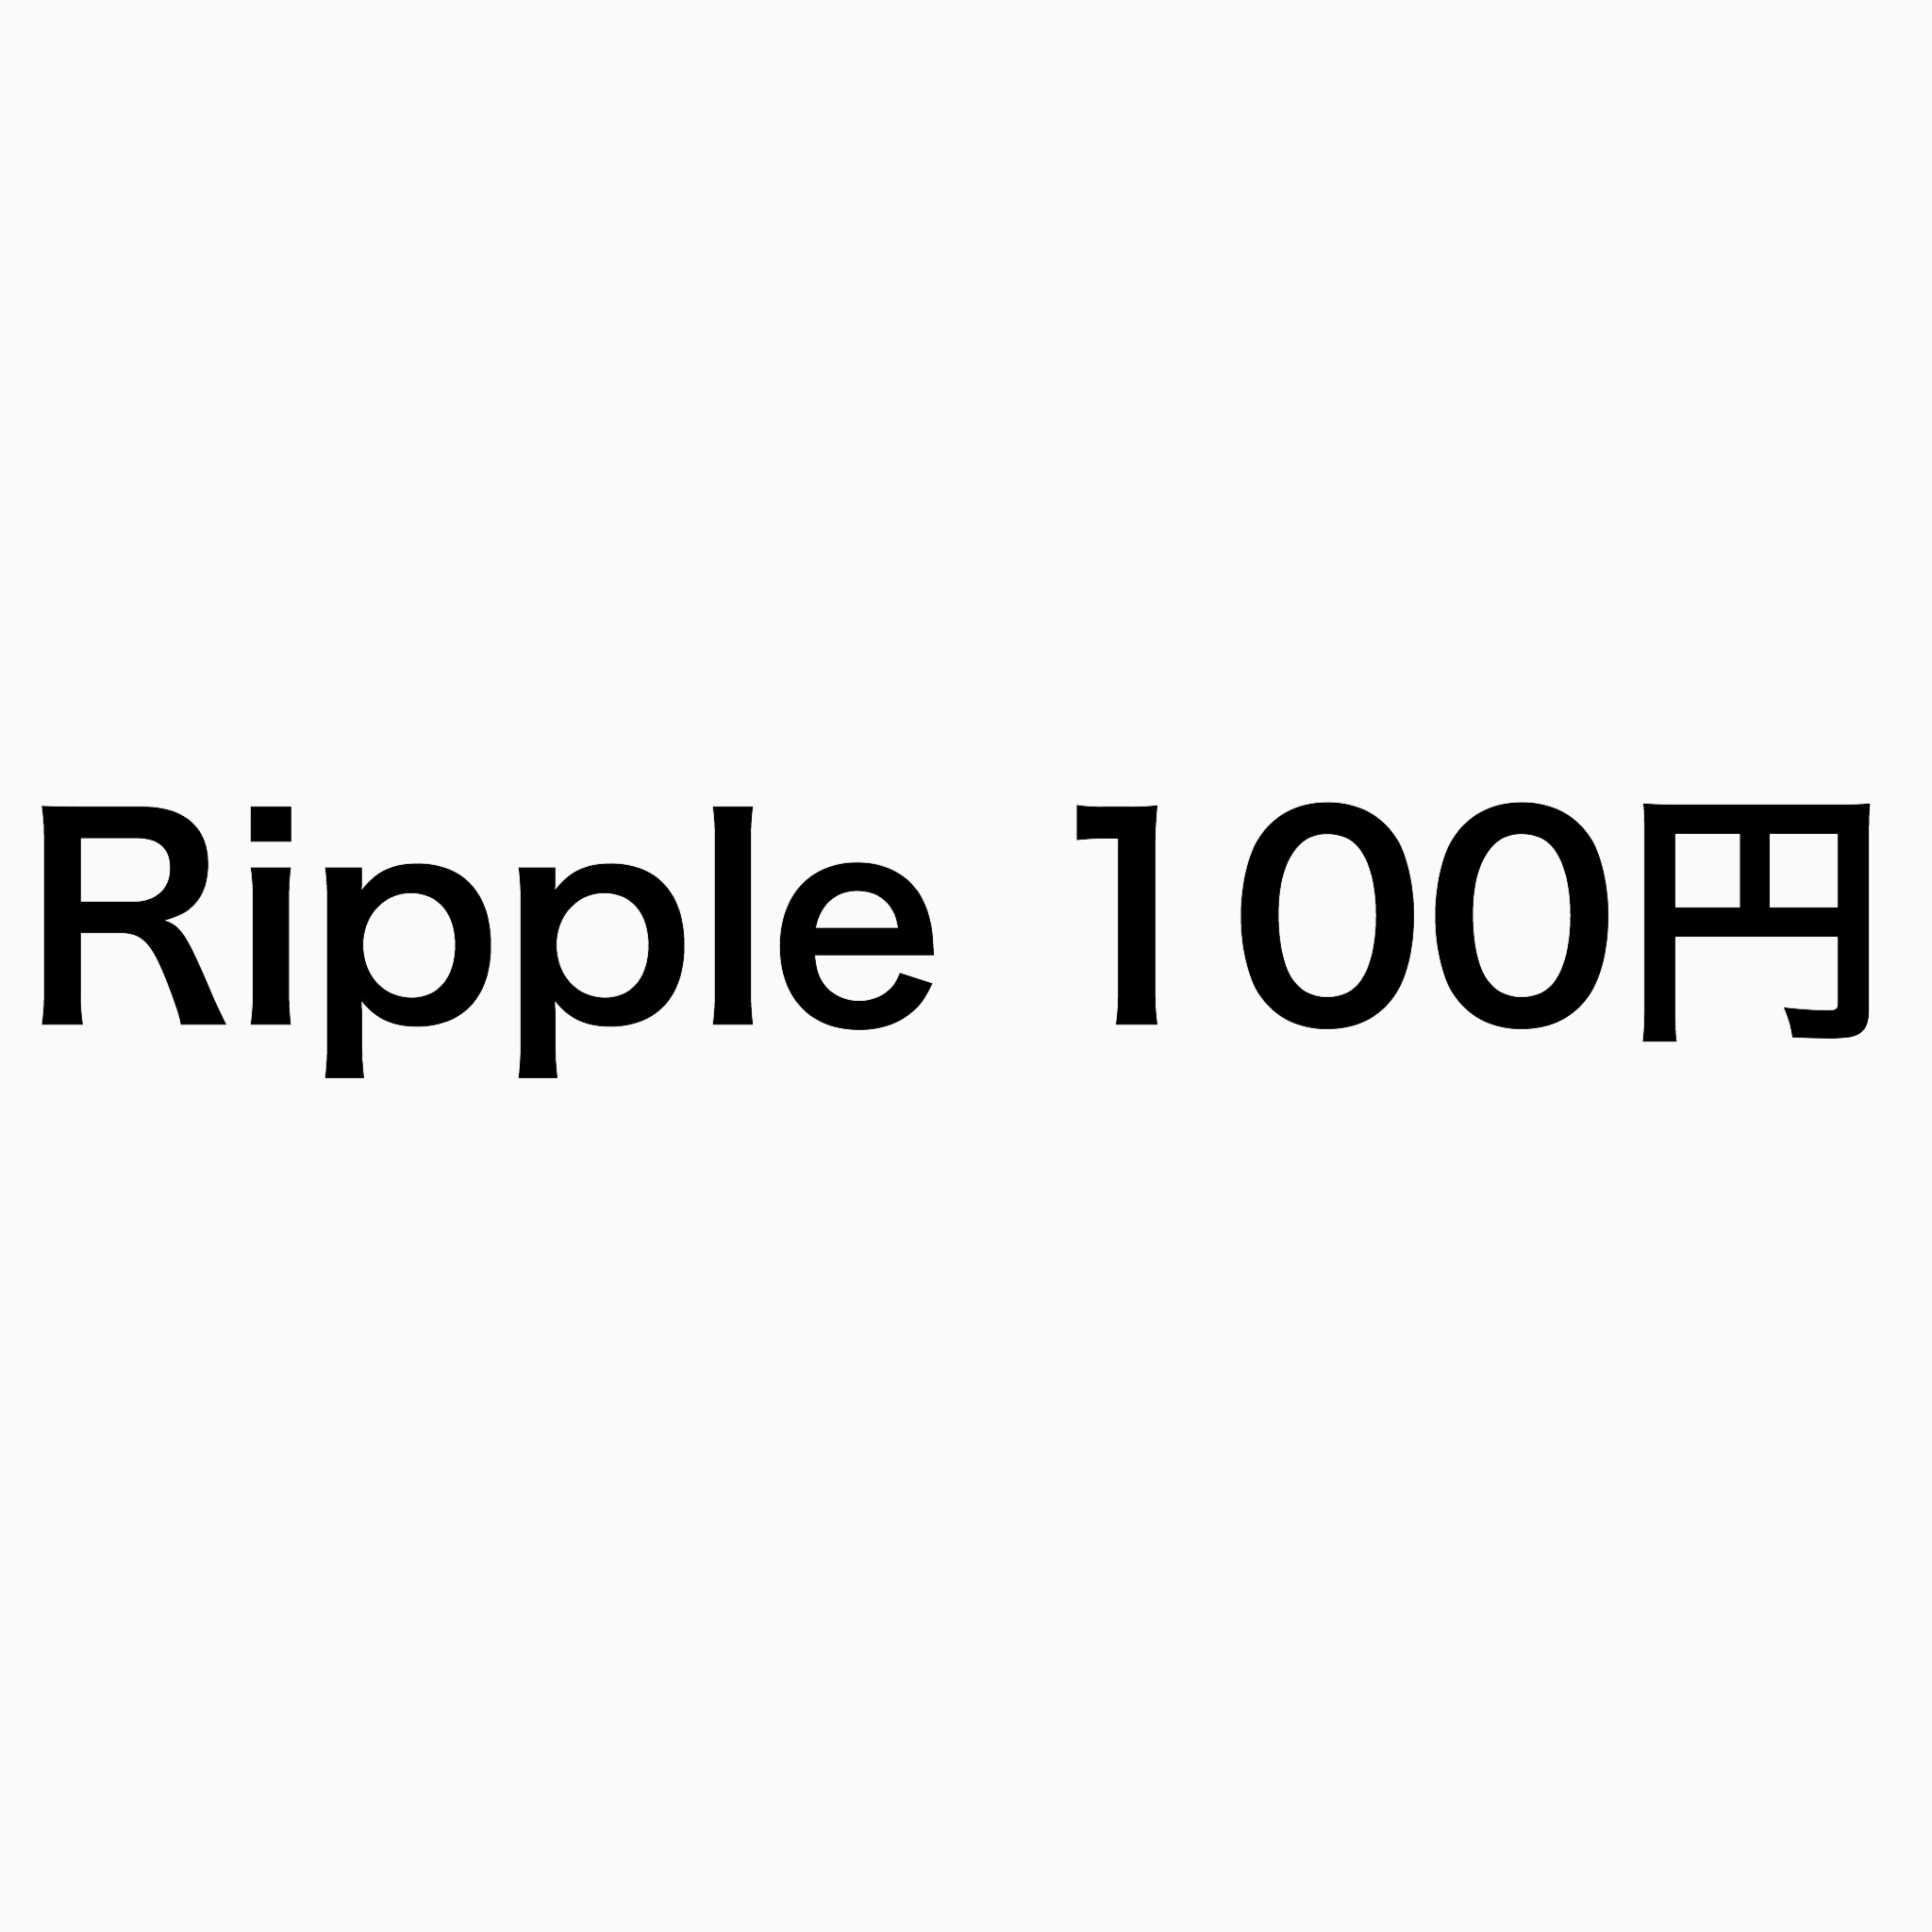 【アルトコインが爆上げ】Ripple100円突破→130円